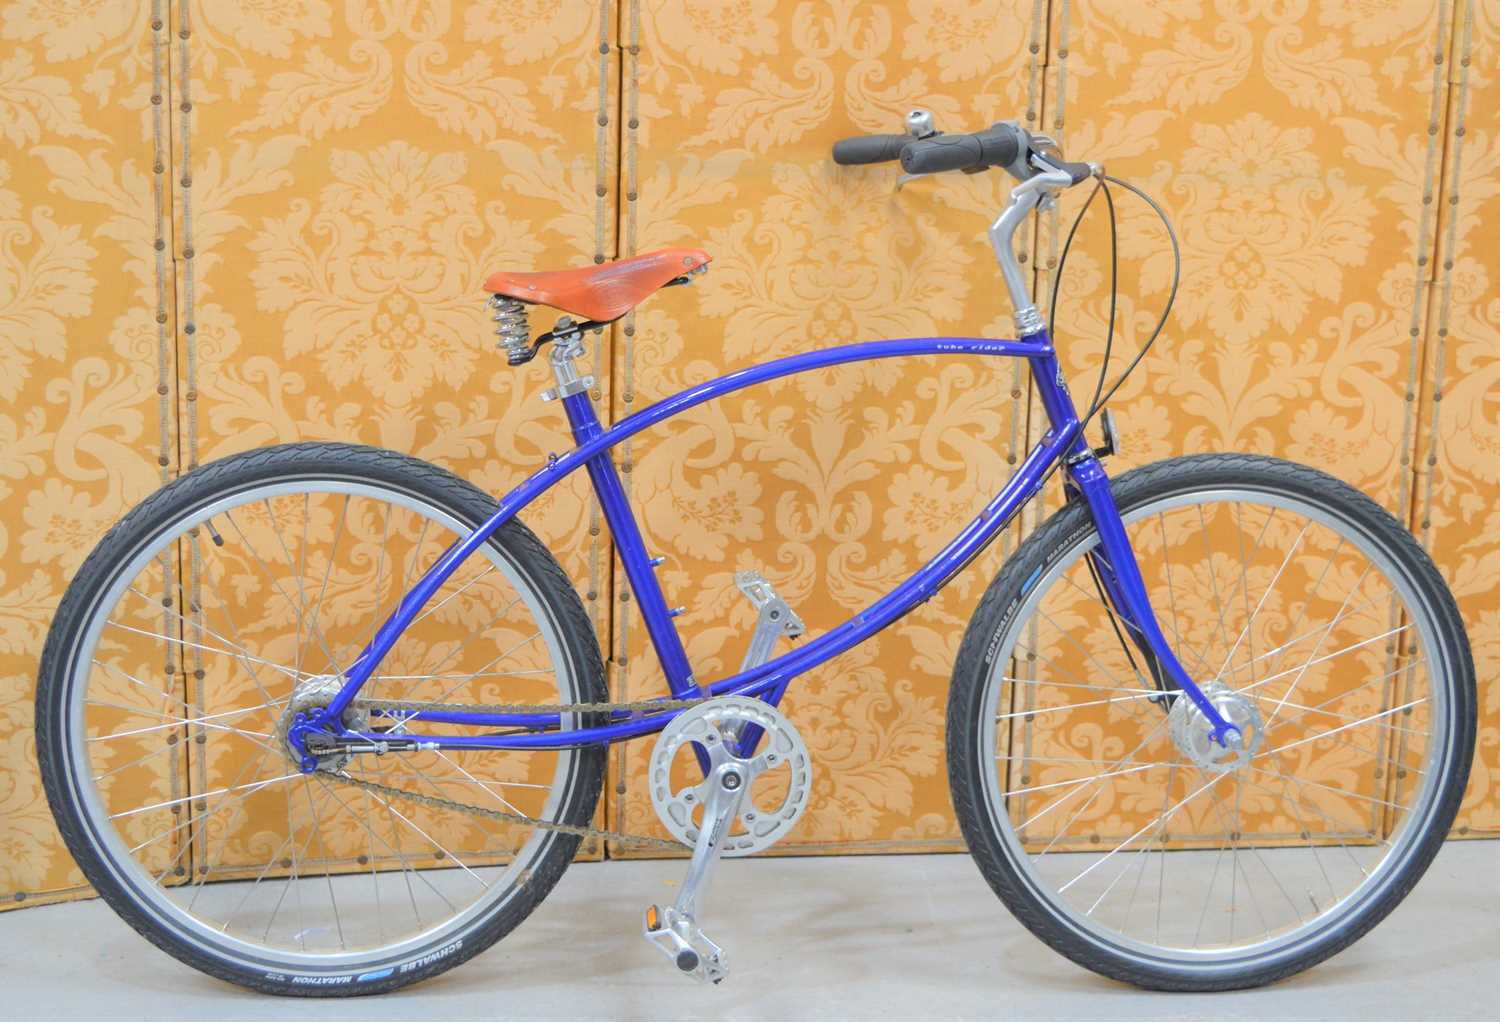 A Pashley "Tube Rider" unisex bicycle, leather Brooks saddle.